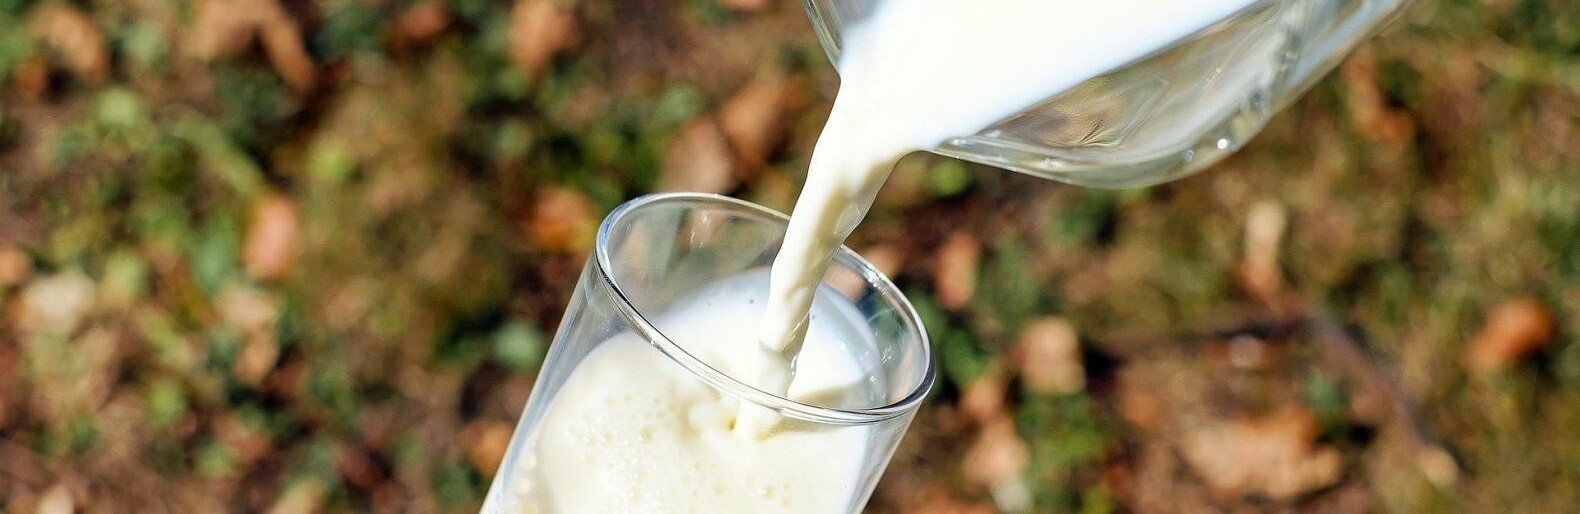 Пункт искусственного осеменения загорелся на молочной ферме в Белгородской области